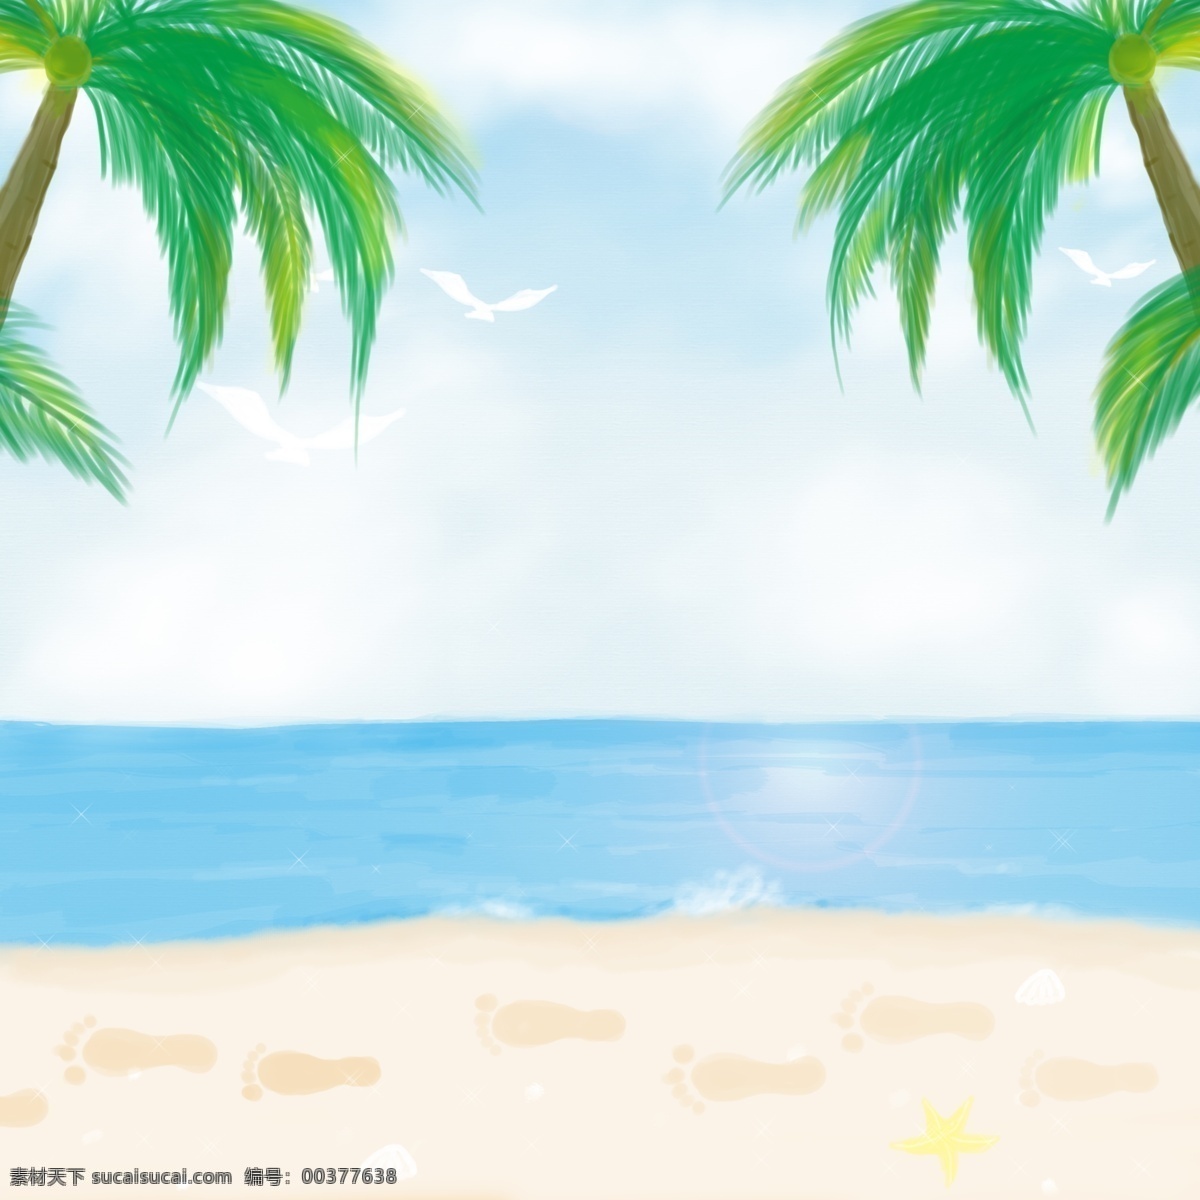 卡通 海洋 沙滩 天空 背景 陆地 海岛 白云 椰子树 动物 海藻 珊瑚 鲸鱼 海底 卡通设计